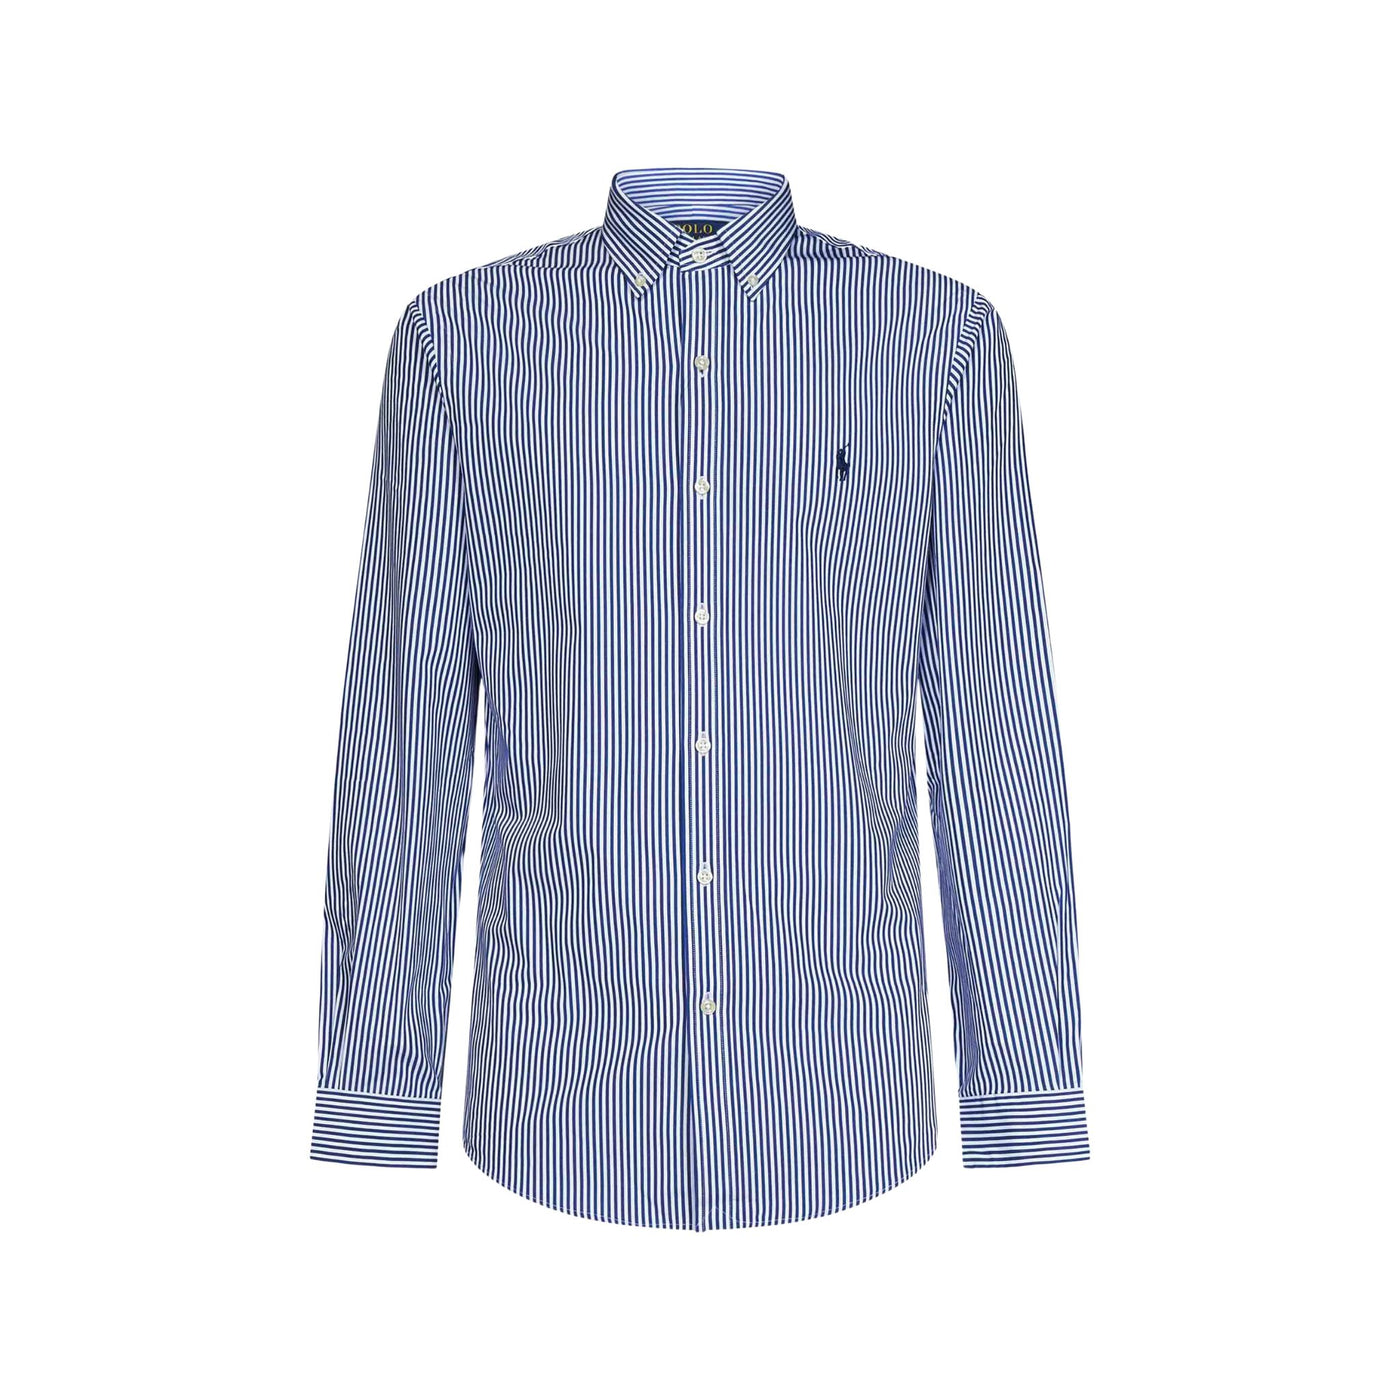 Men's blue cotton shirt